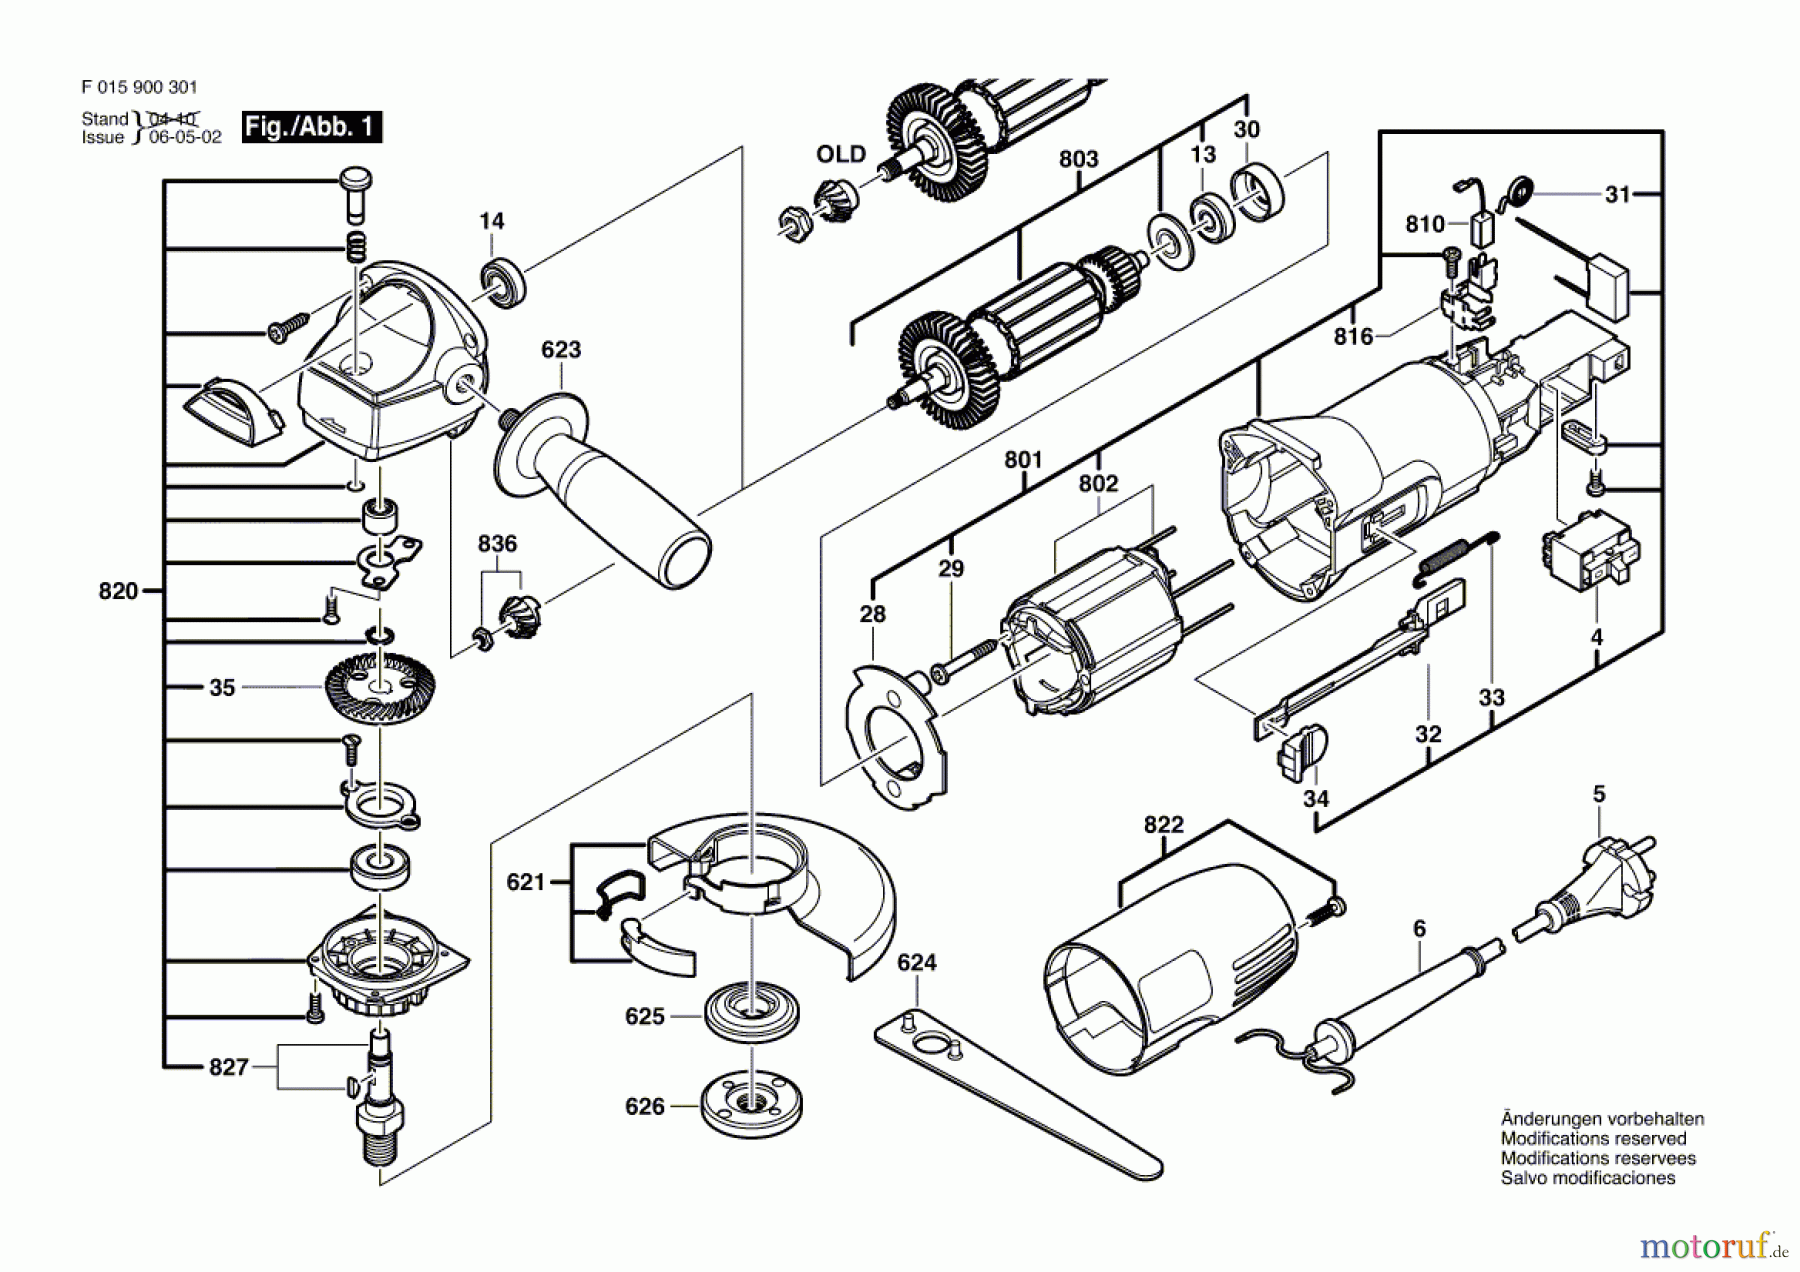  Bosch Werkzeug Winkelschleifer 9371 Seite 1